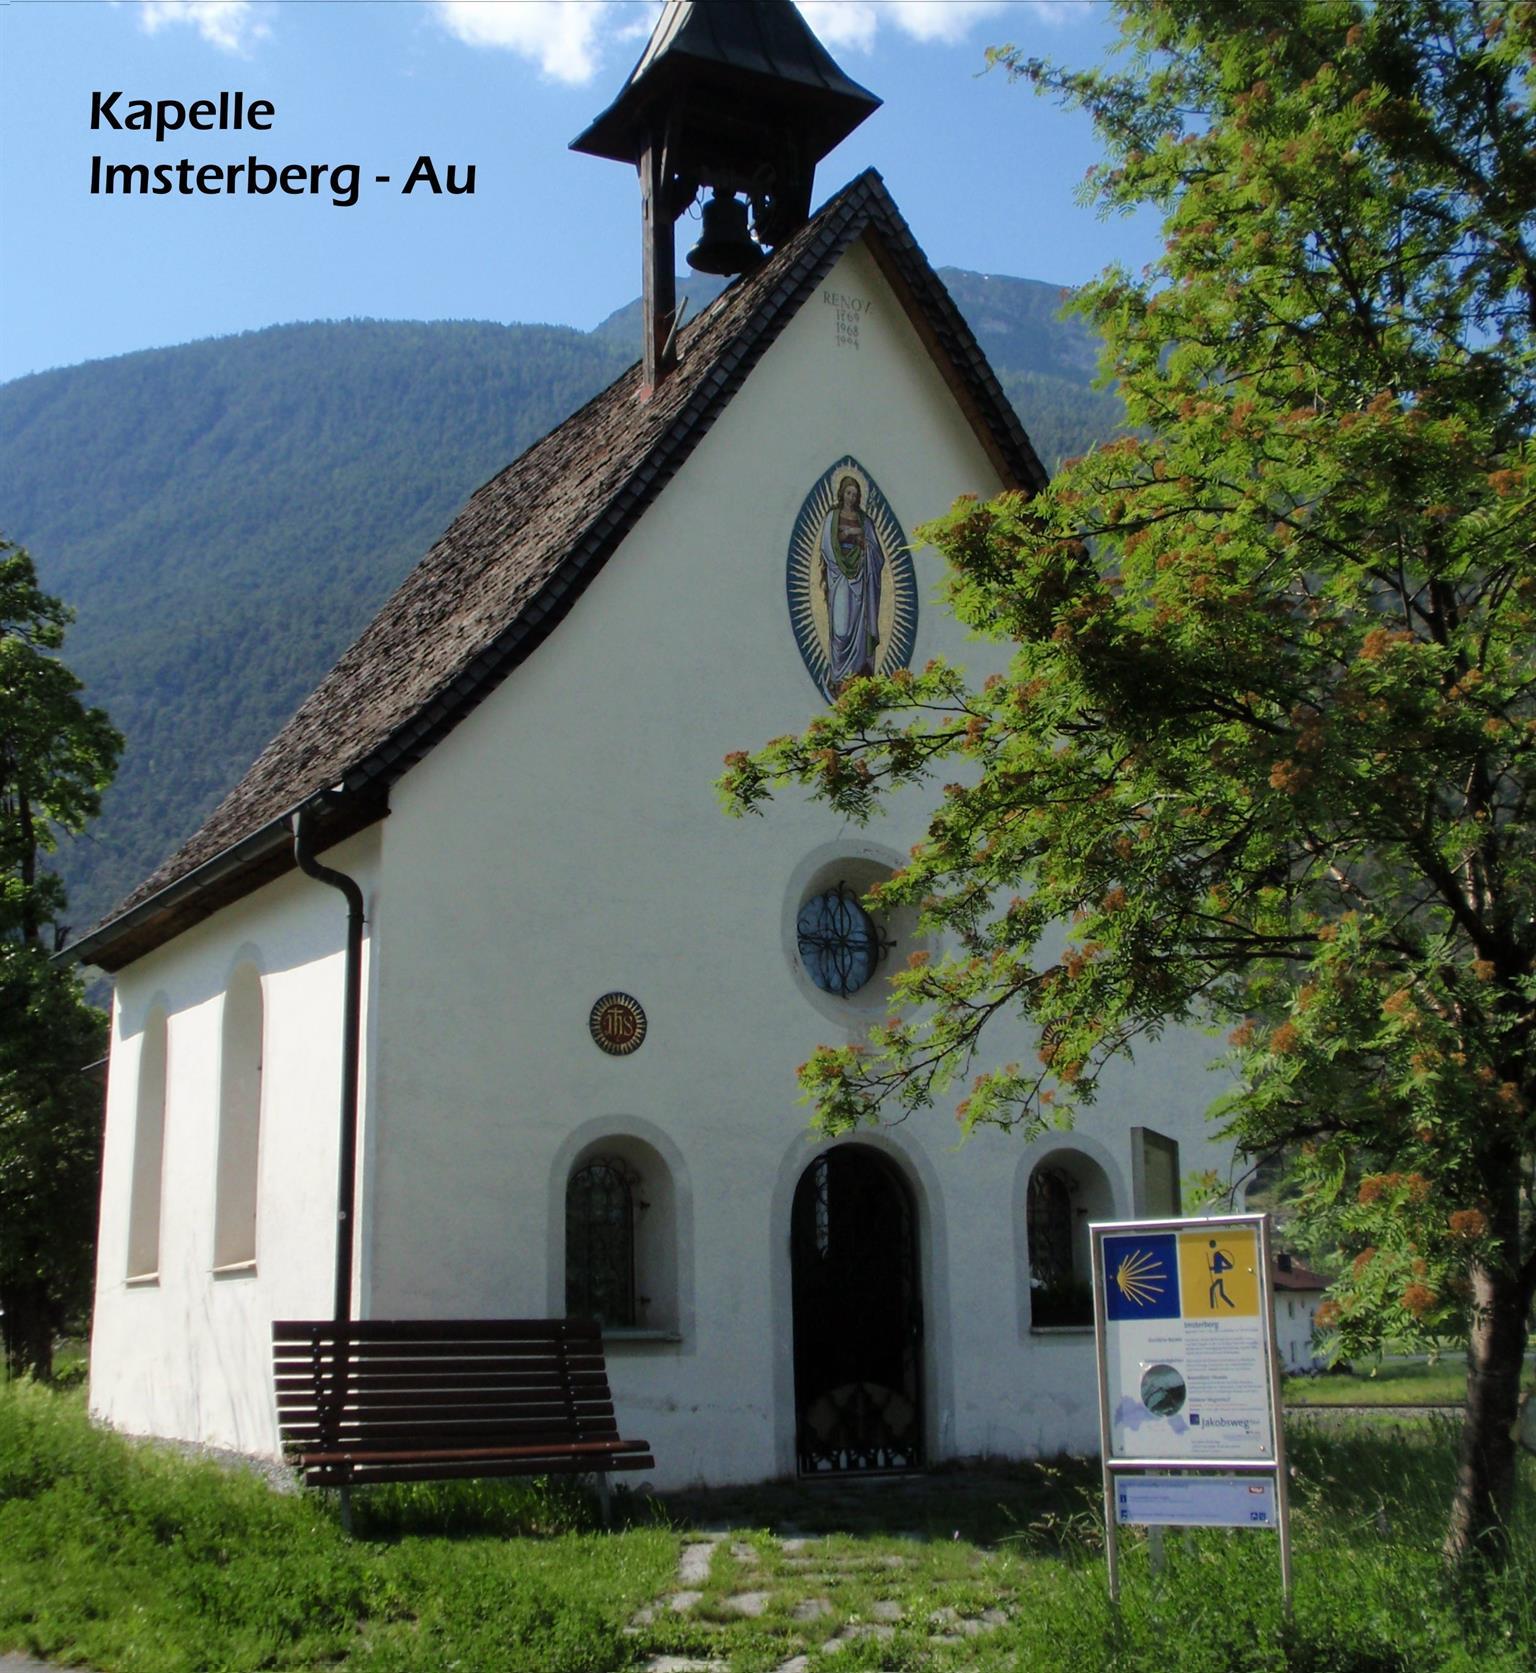 Kapelle in Imsterberg